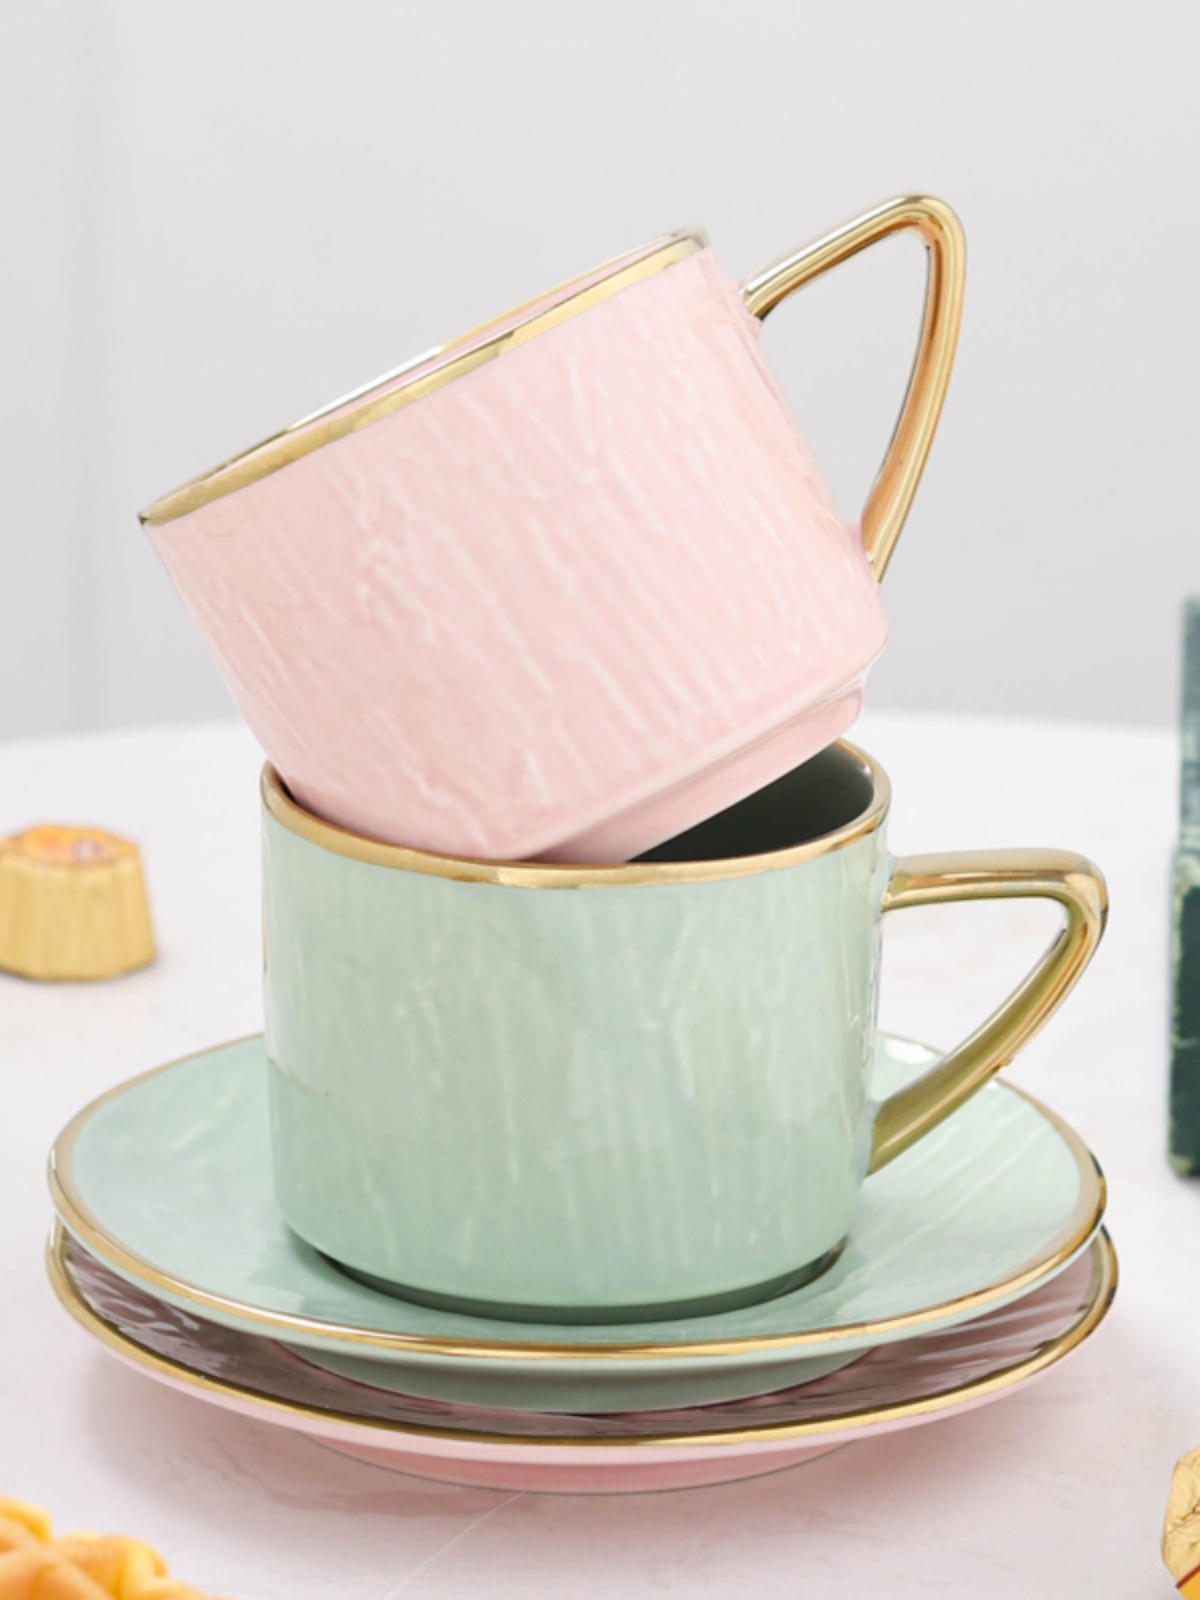 歐式金邊咖啡杯磨砂陶瓷杯描金花茶杯碟套裝簡約帶碟勺套杯包郵 (6.2折)